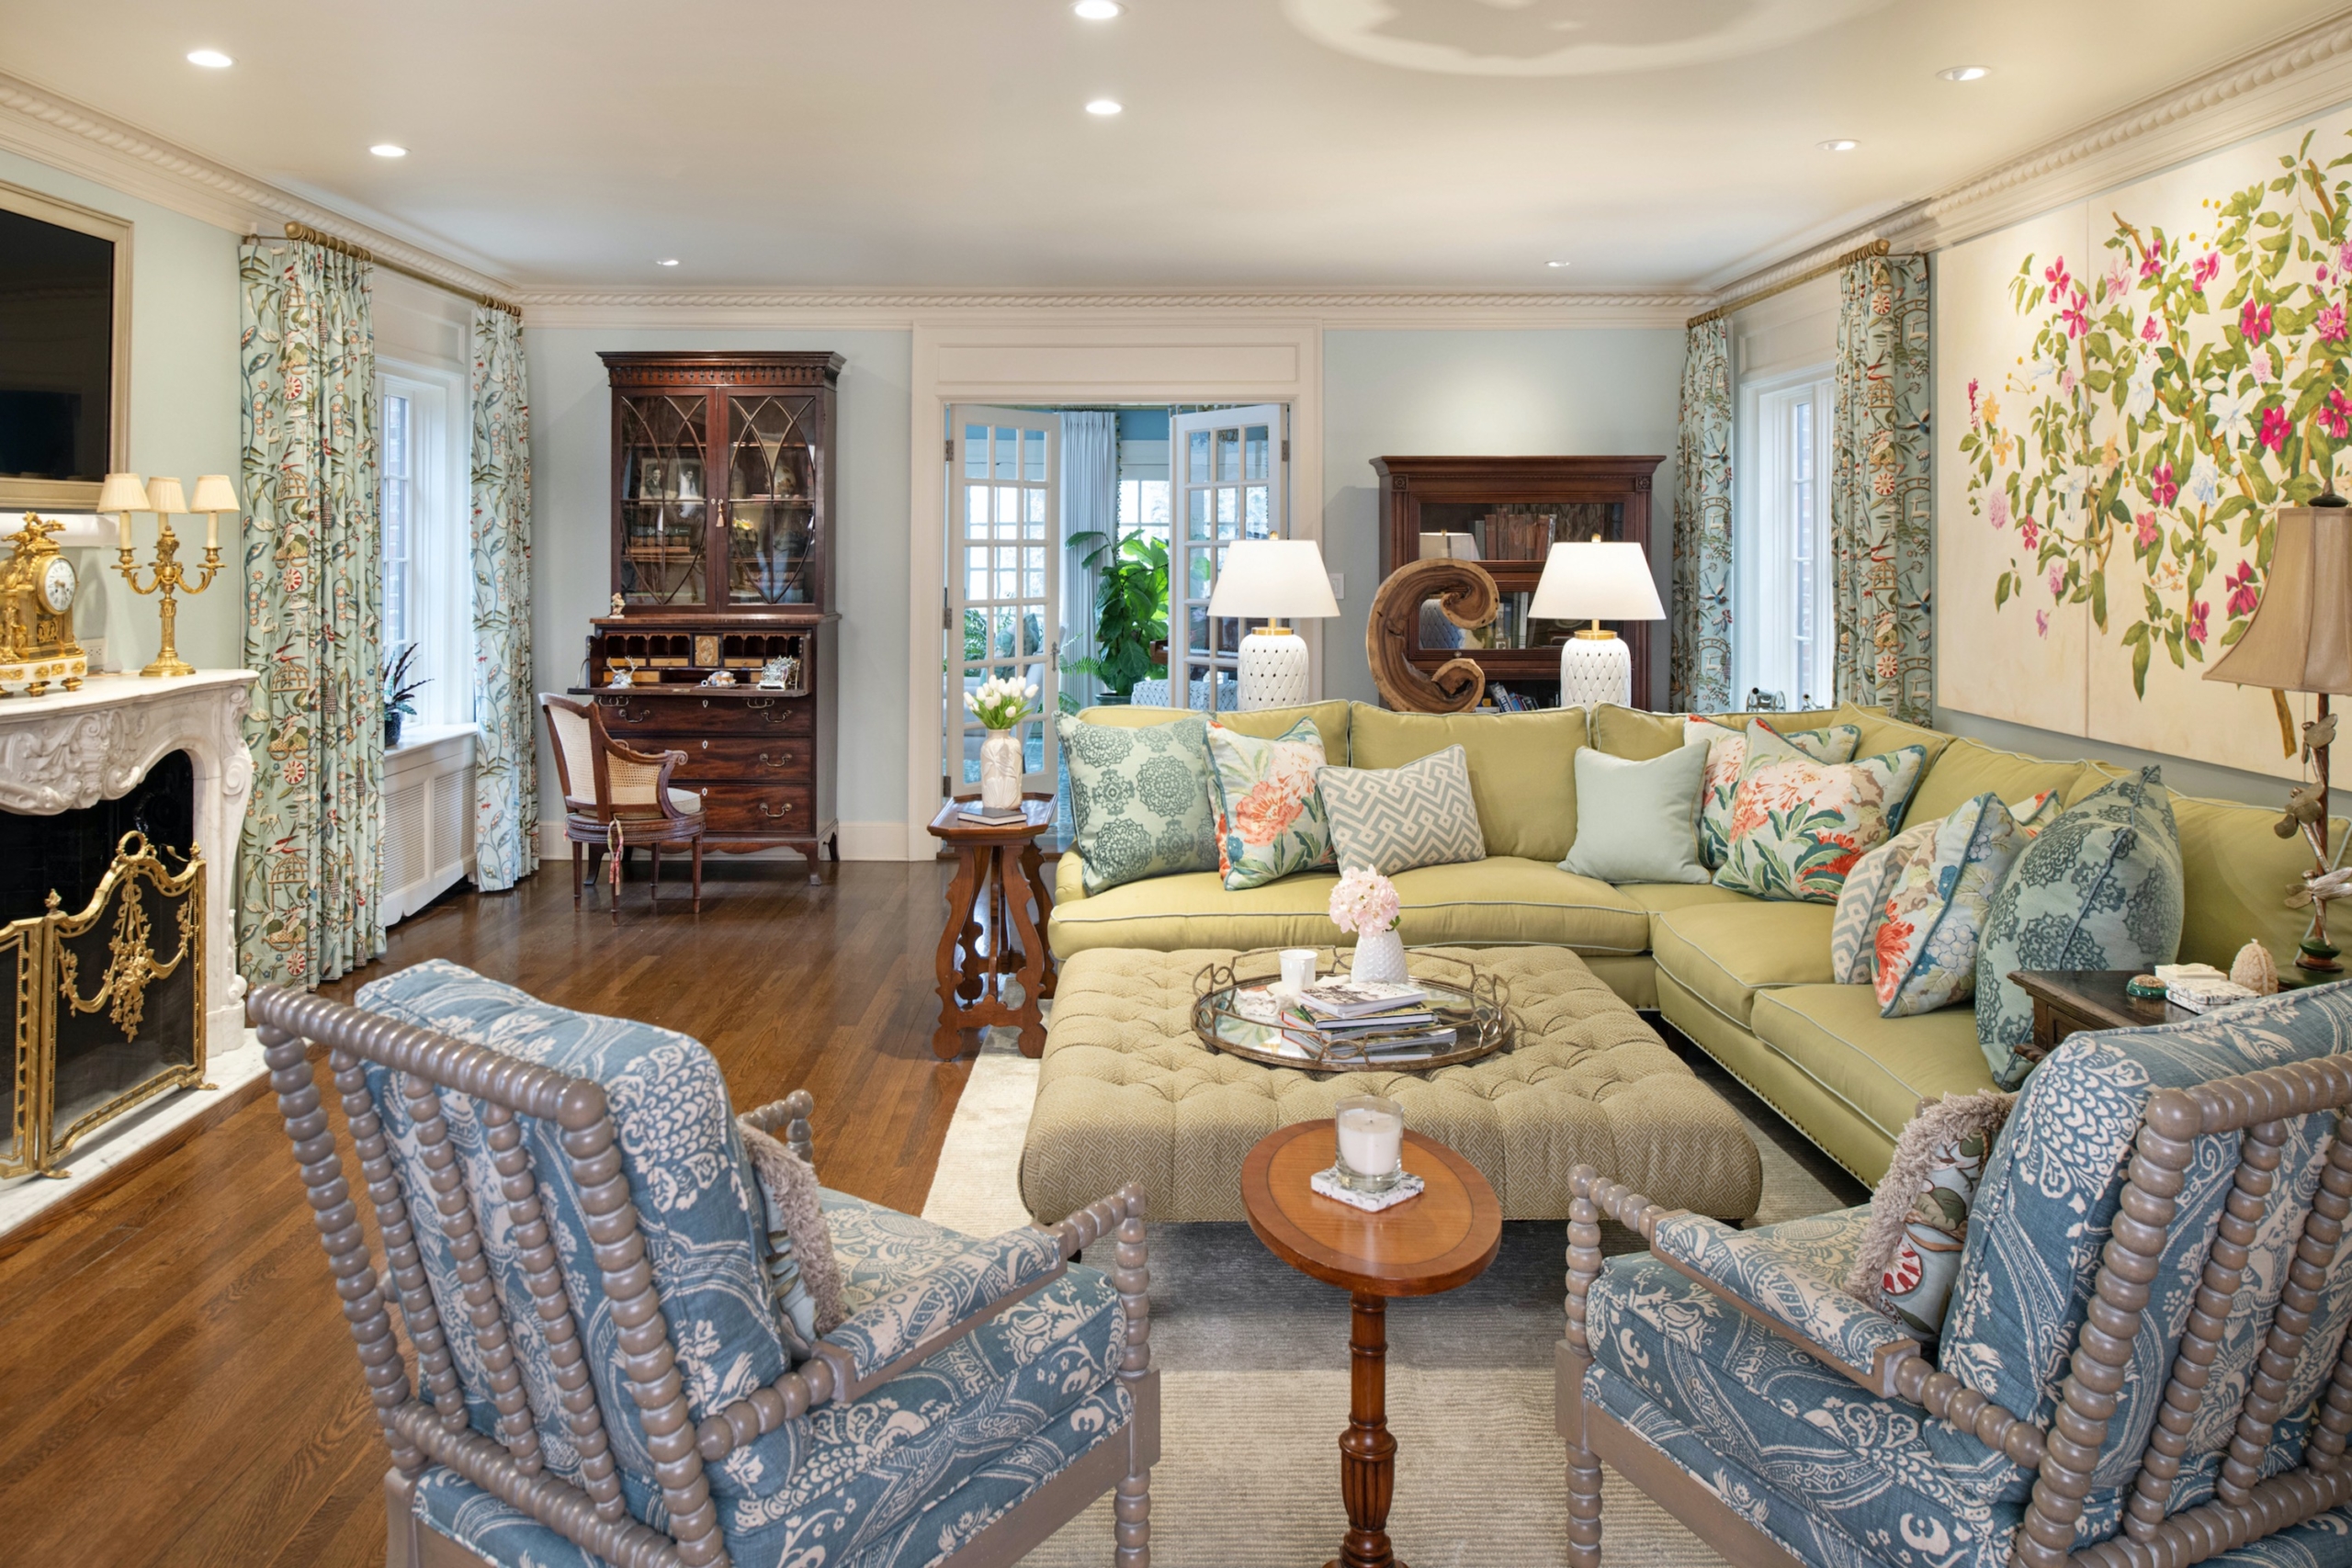 Một chiếc ghế sofa sặc sỡ là điểm nhấn chủ đạo trong thiết kế phòng khách, trong đó những gam màu xanh lá cây và xanh dương là nổi bật nhất. (Ảnh: Handout/TNS)